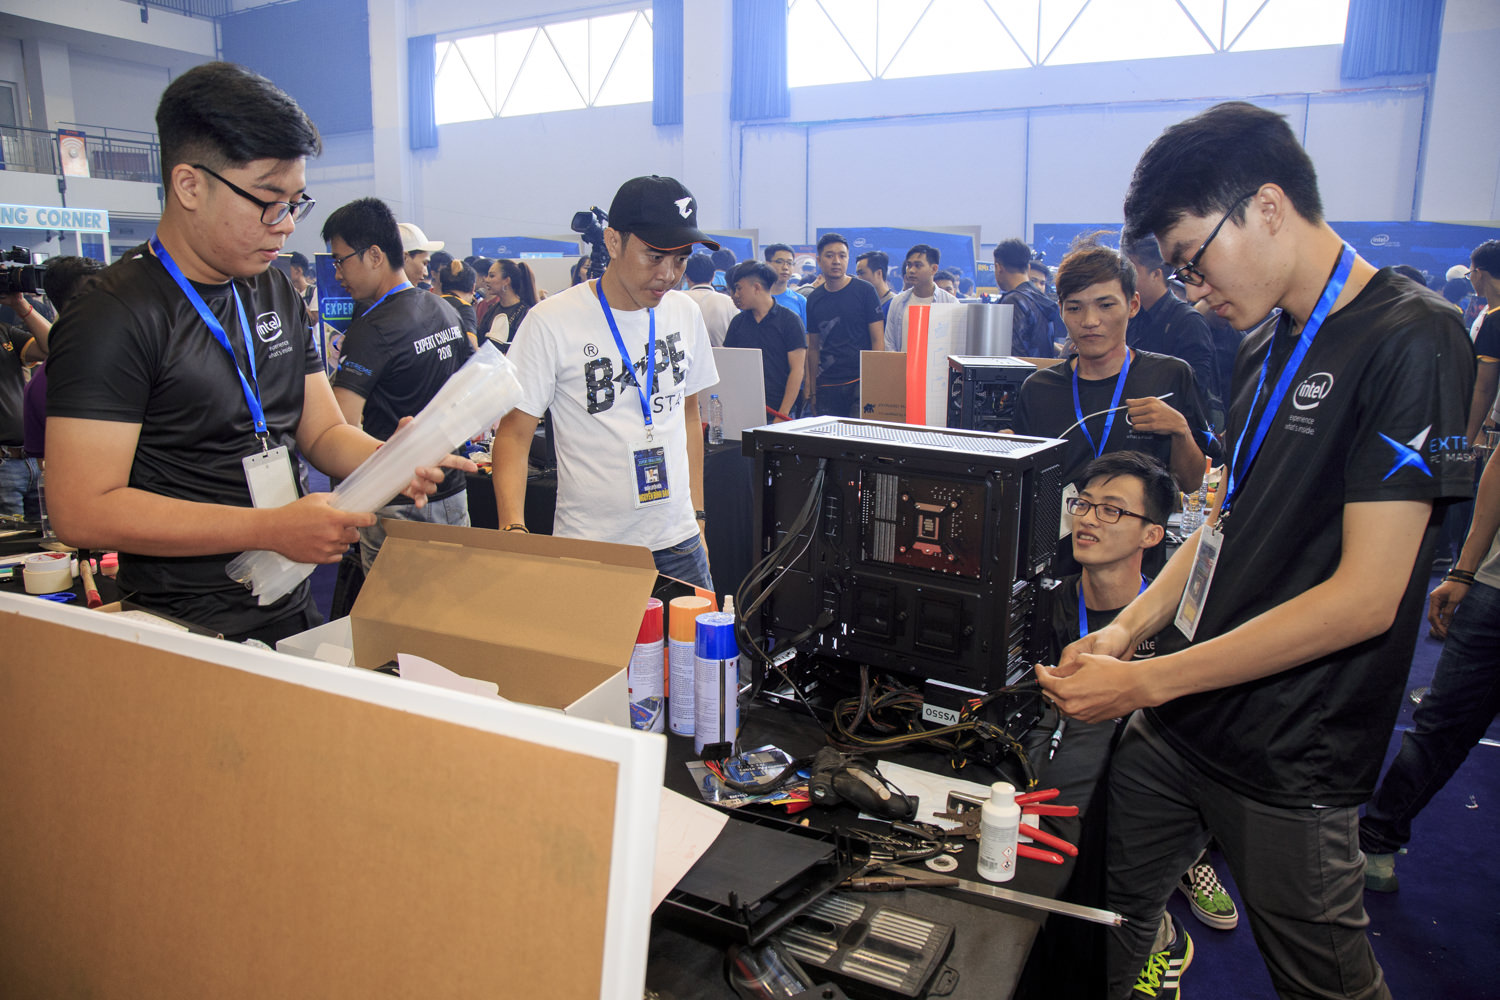 Nhìn lại những hình ảnh sôi động từ Lễ hội trình diễn máy tính lớn nhất Việt Nam – Extreme PC Master mùa 5